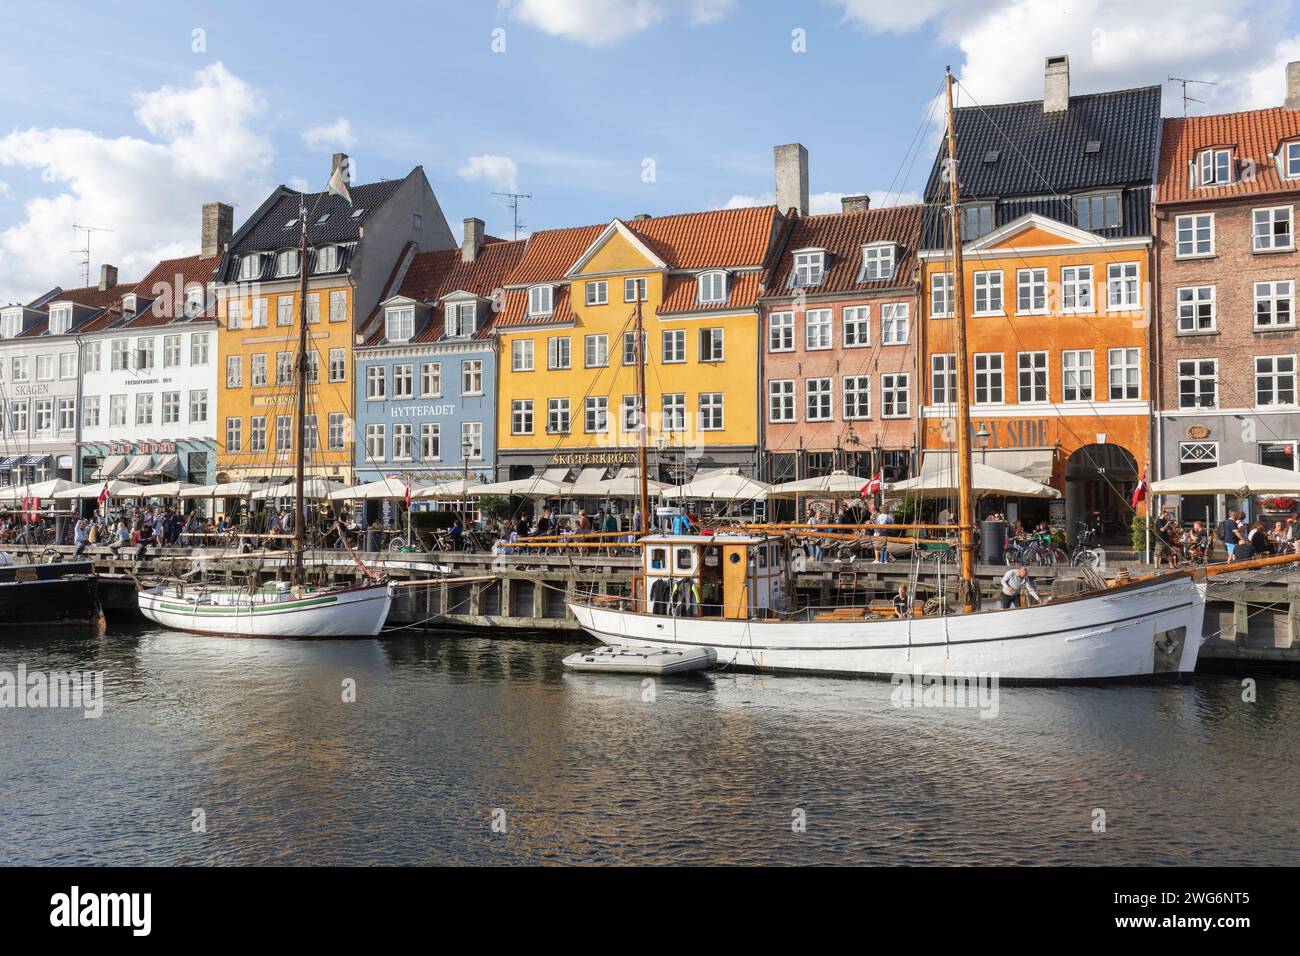 Nyhavn oder New Harbour ist ein Hafen-, Kanal- und Unterhaltungsviertel aus dem 17. Jahrhundert in Kopenhagen. Stockfoto